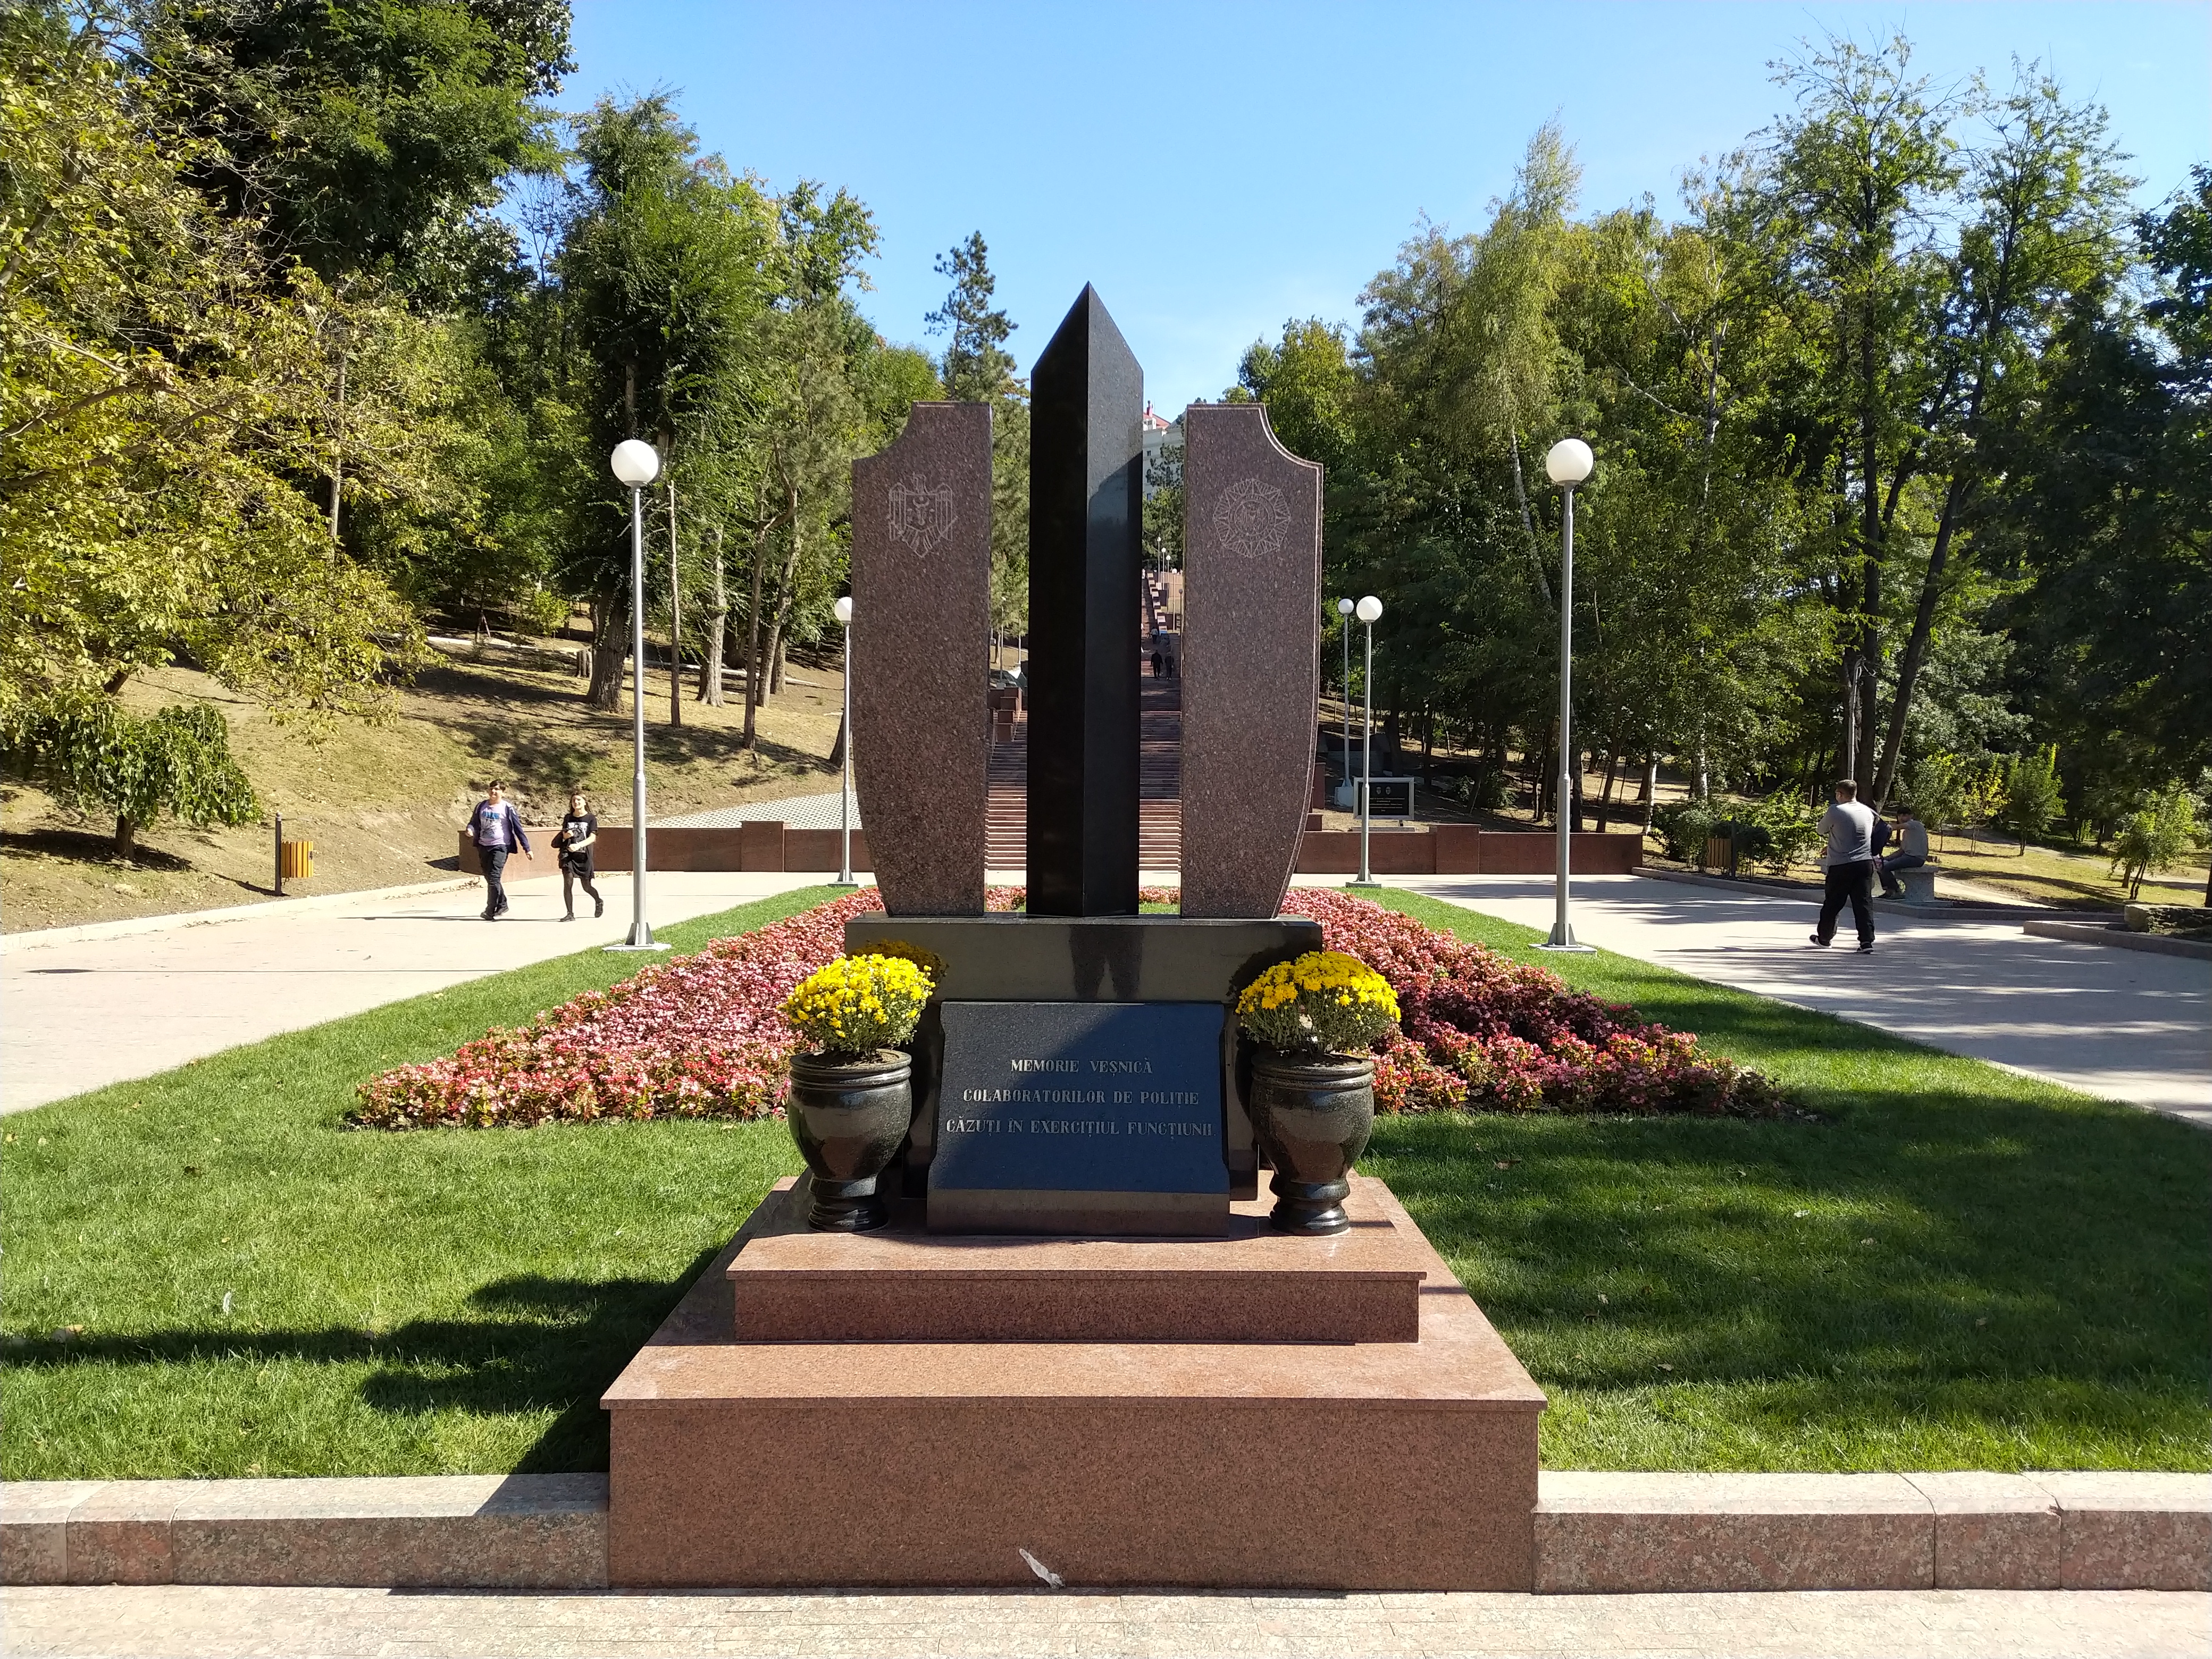 MD, Orasul Chisinau, Monument Memorie Veșnică Colaboratorilor de Poliție căzuți în exercițiul funcțiunii